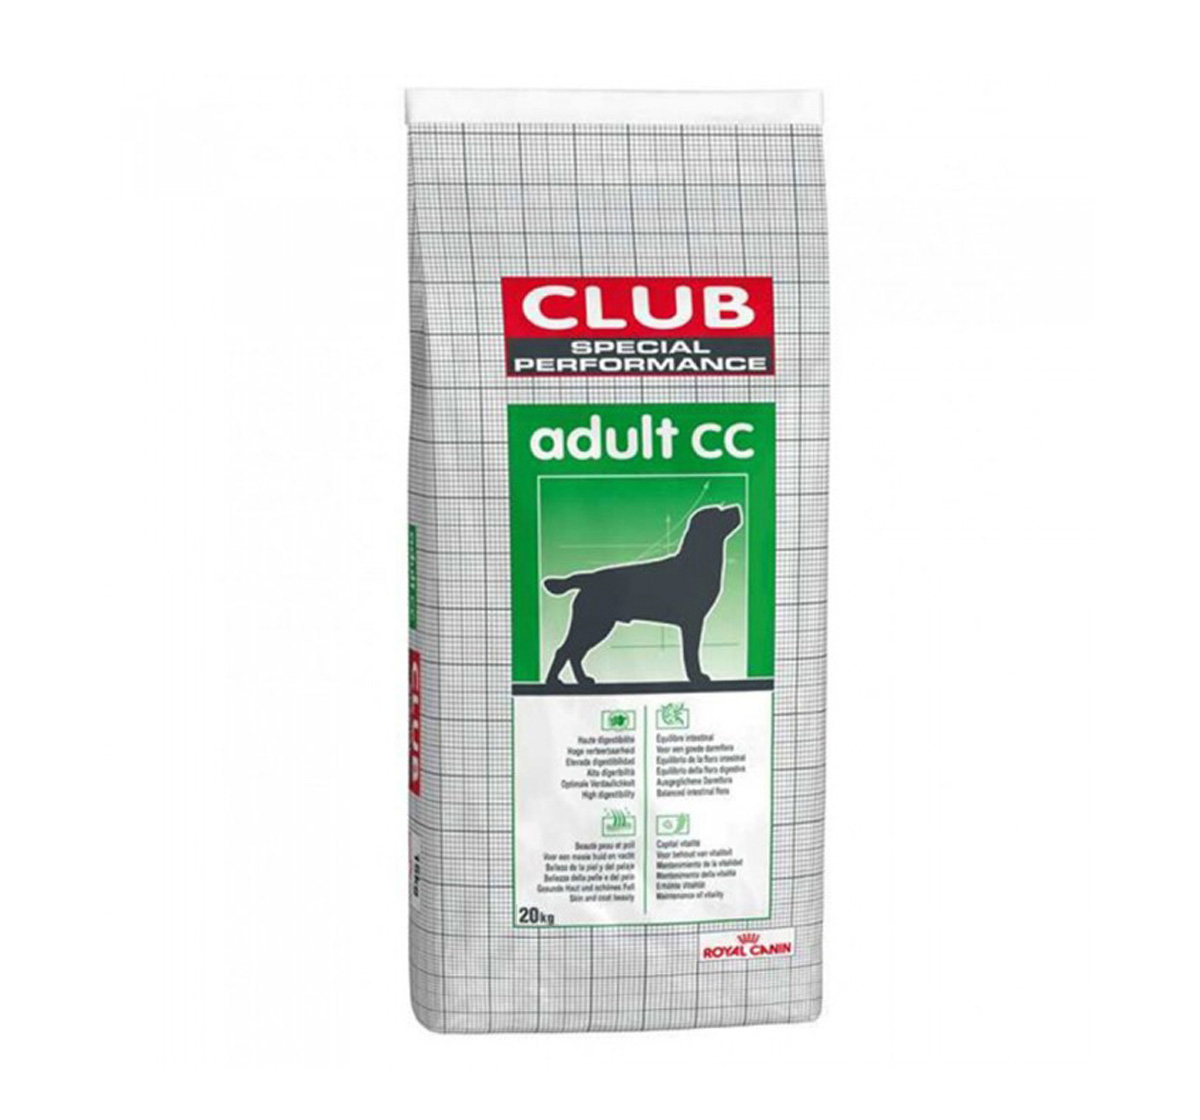 Royal Canin Club Pro Adult 20kg - Thức ăn cho chó trưởng thành không phân biệt giống và kích cỡ